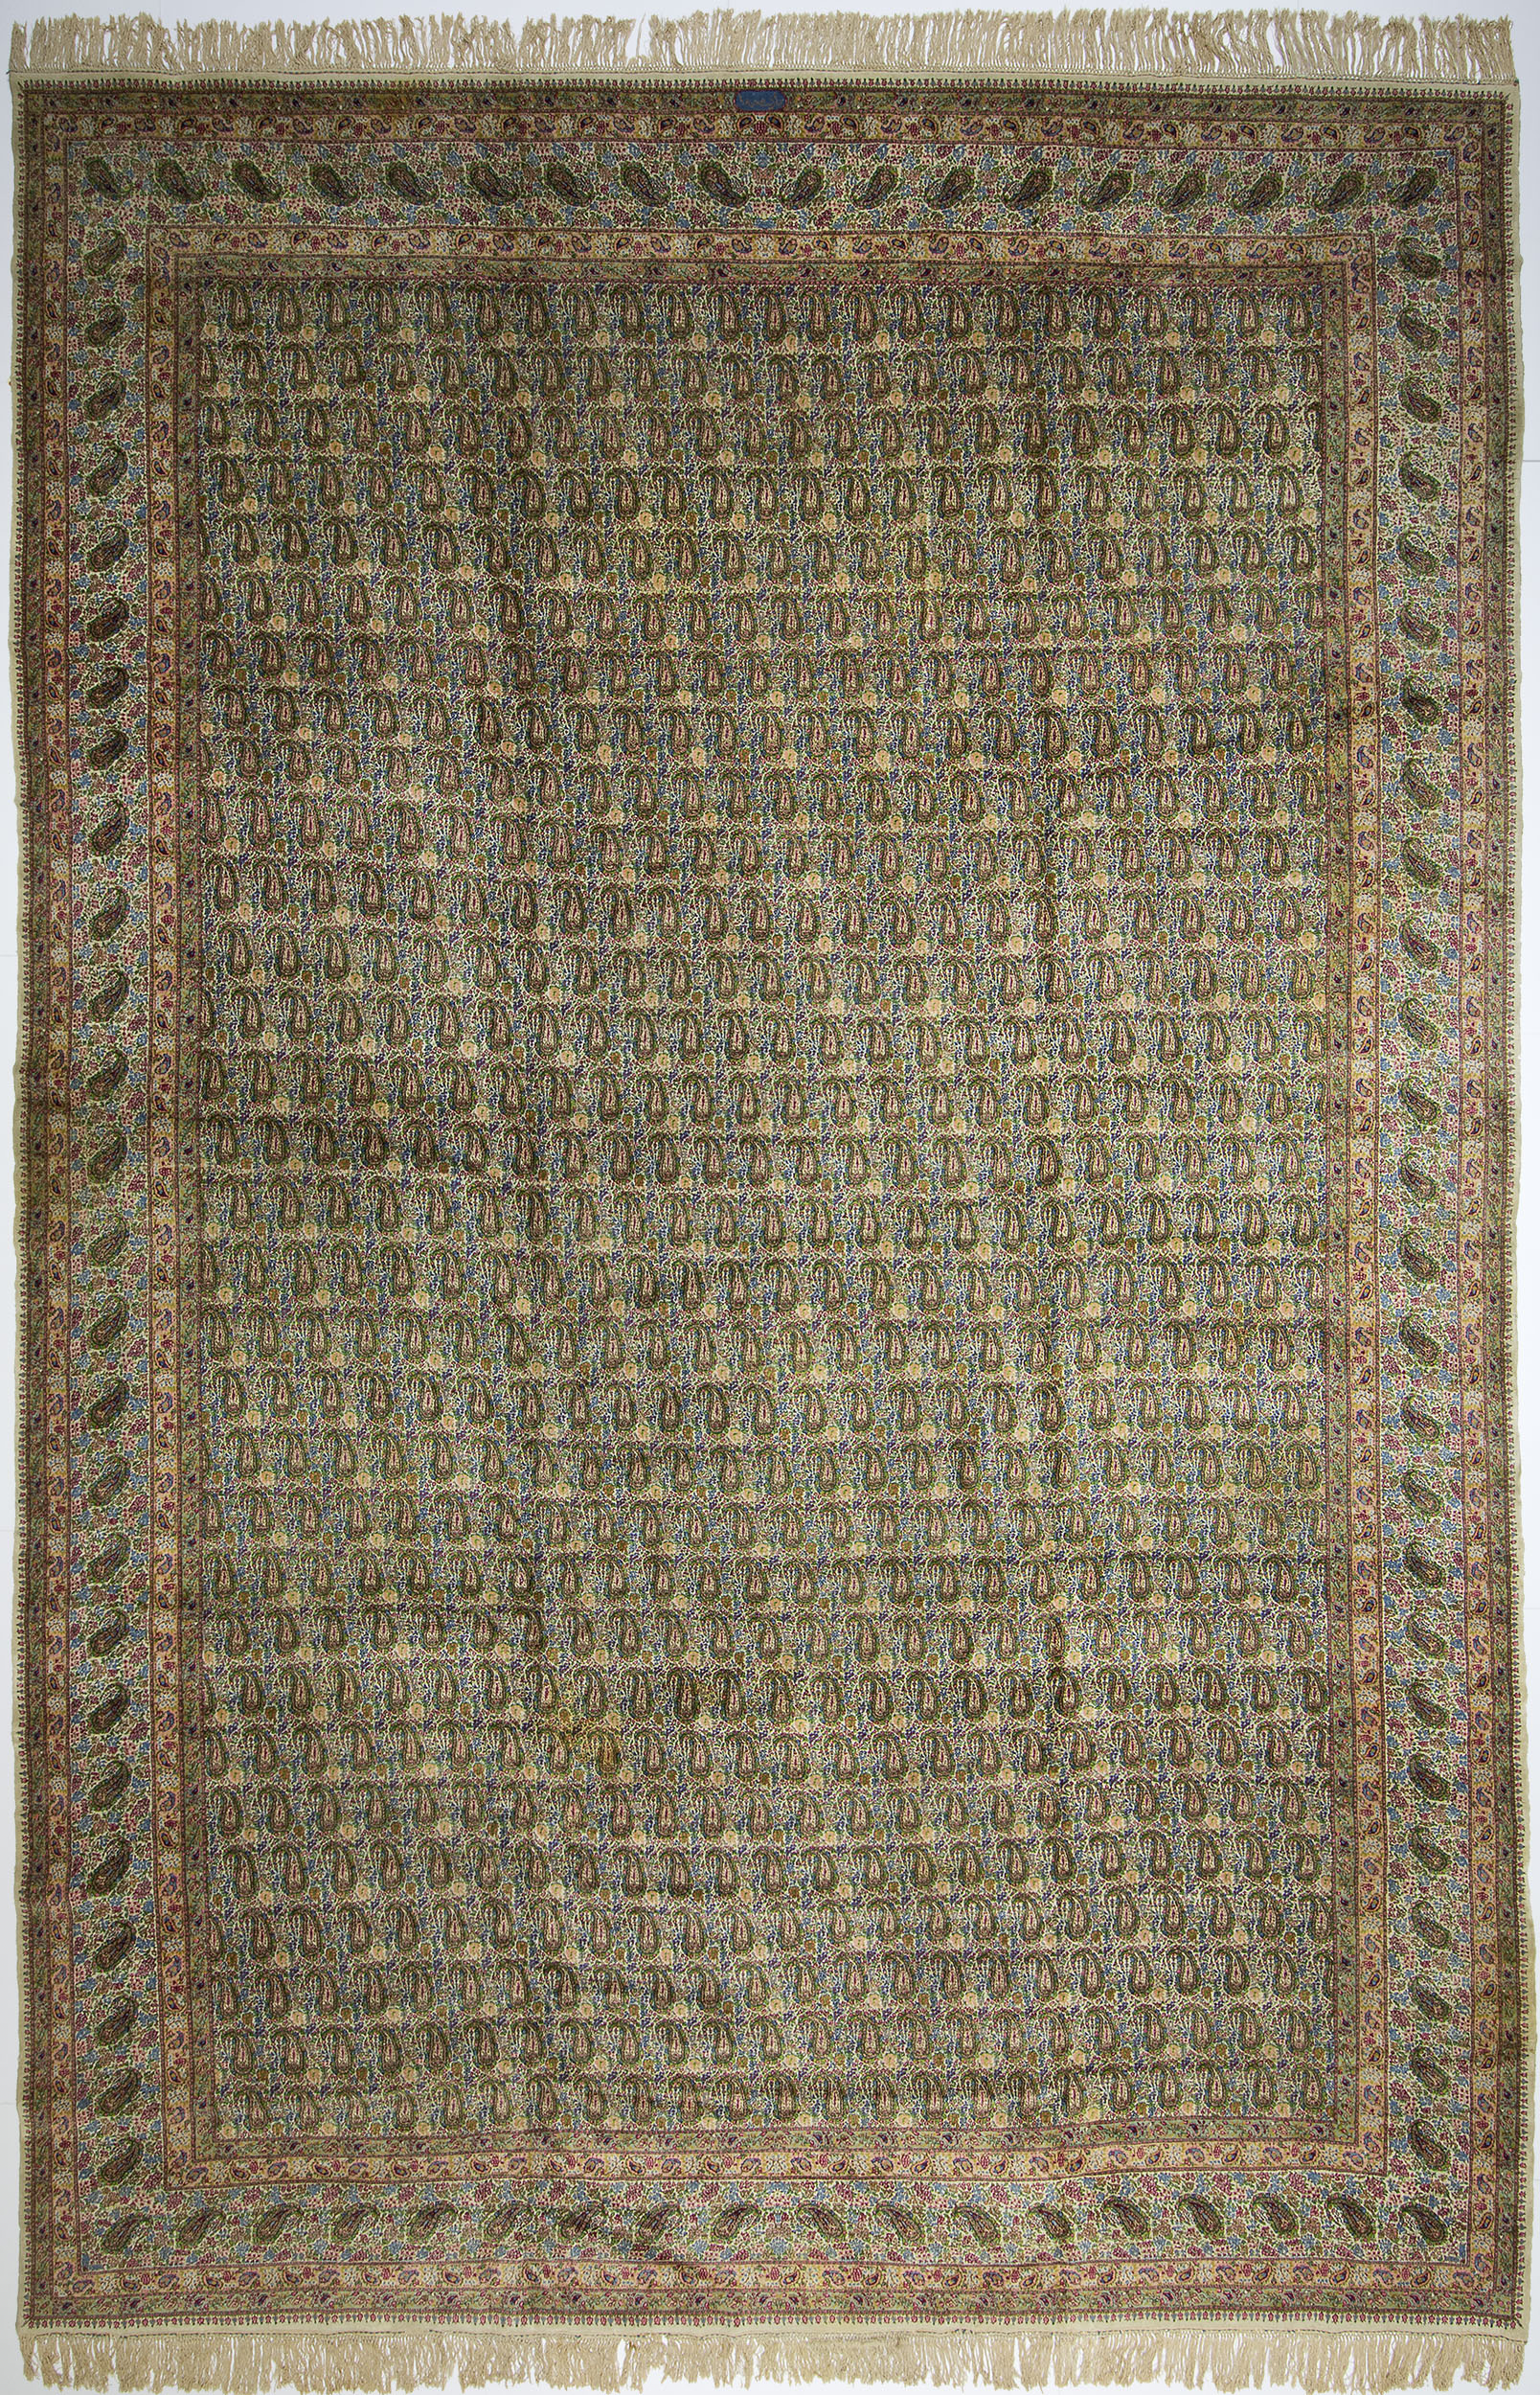 Kerman Carpet 19' 9" x 13' 0" 